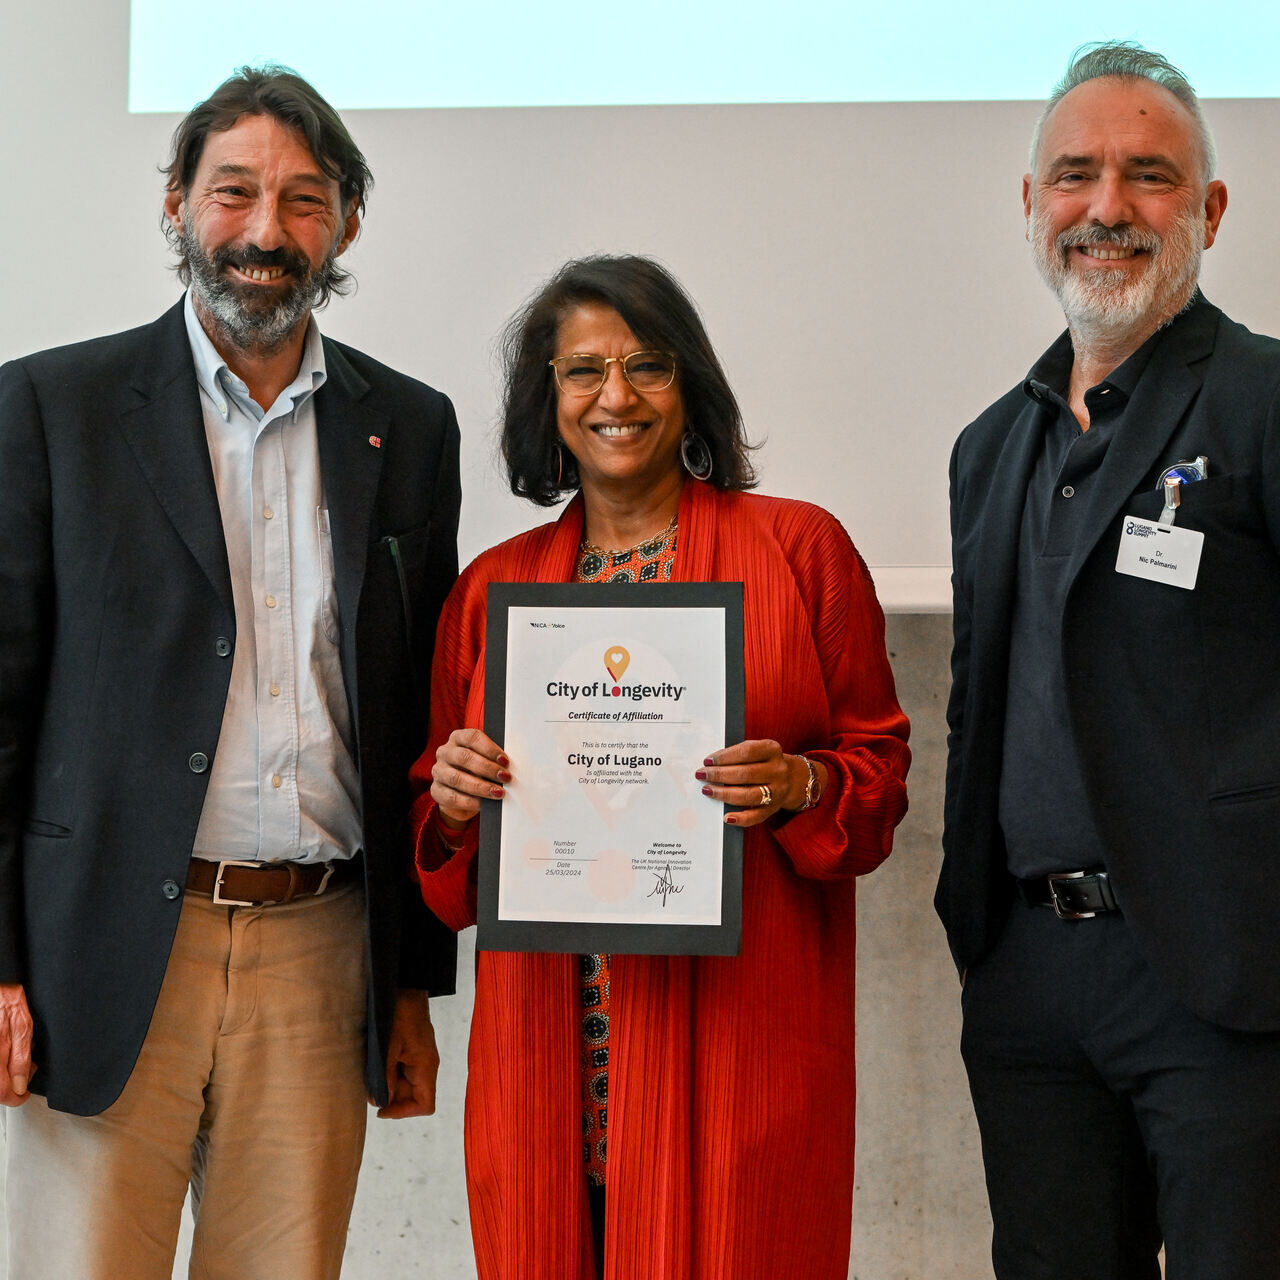 Qyteti i Jetëgjatësisë: dorëzimi i certifikatës së anëtarit të rrjetit në Lugano